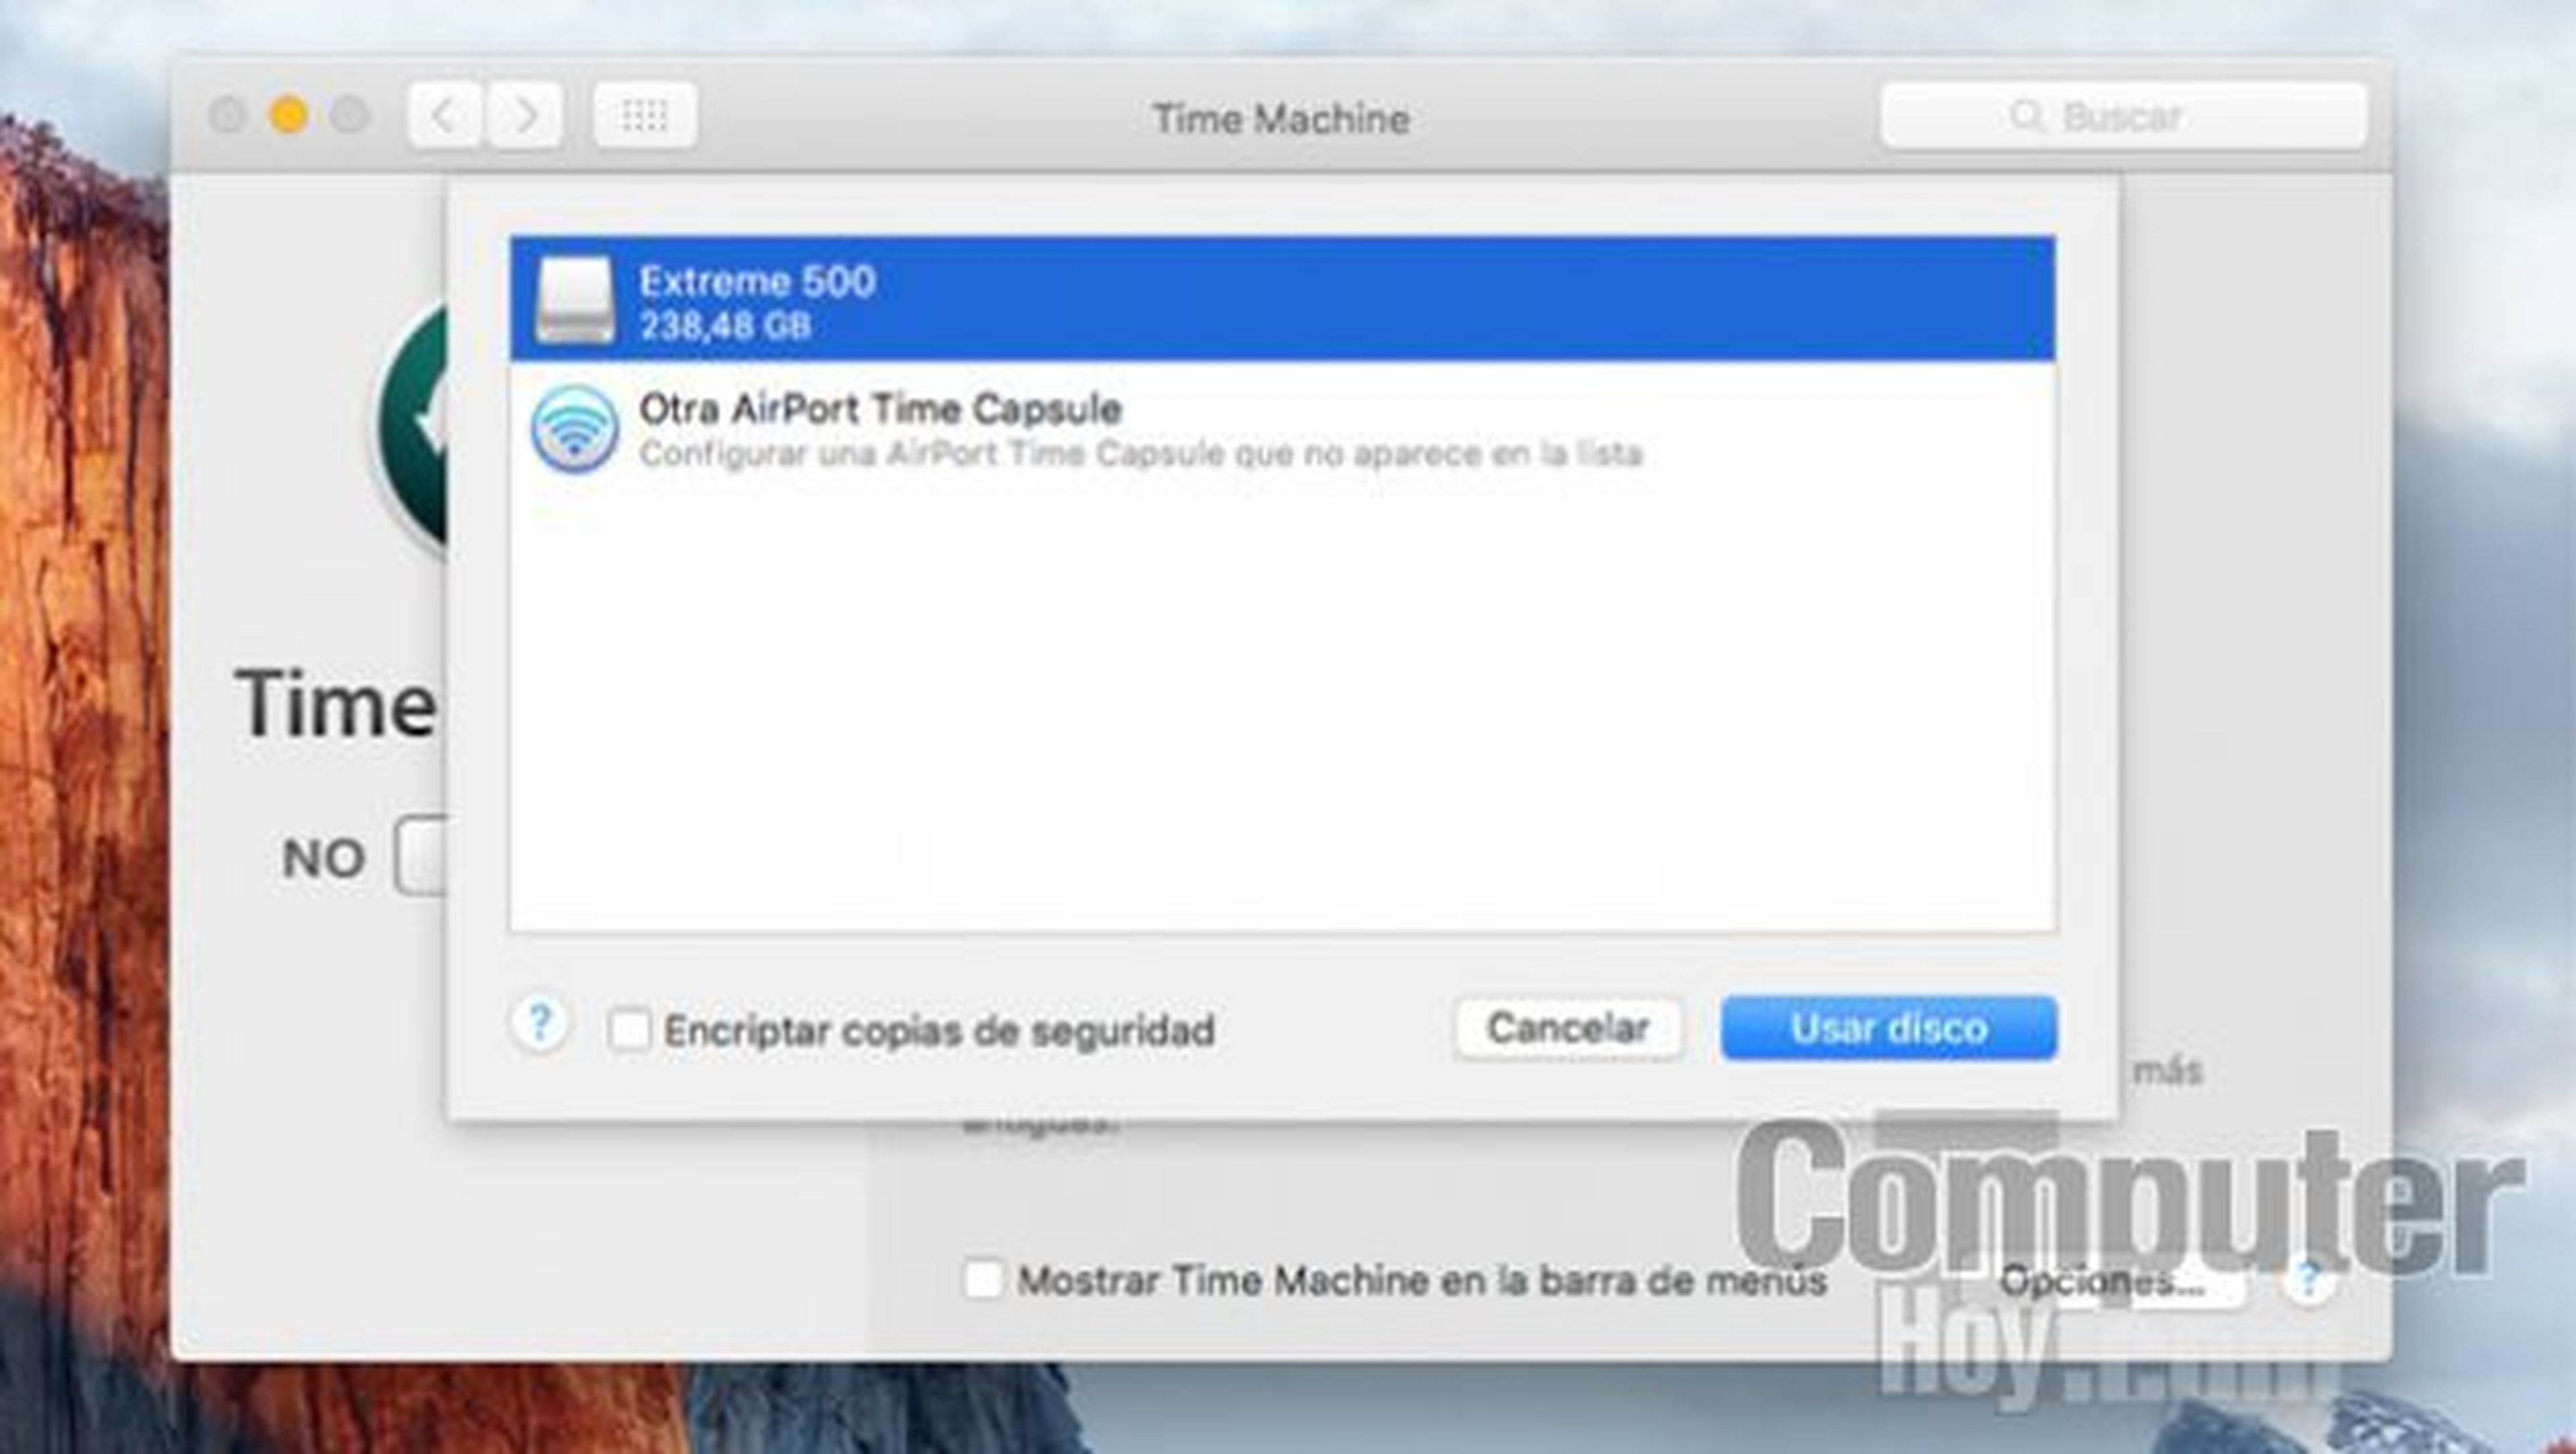 Configura la copia de seguridad en tu Mac con Time Machine